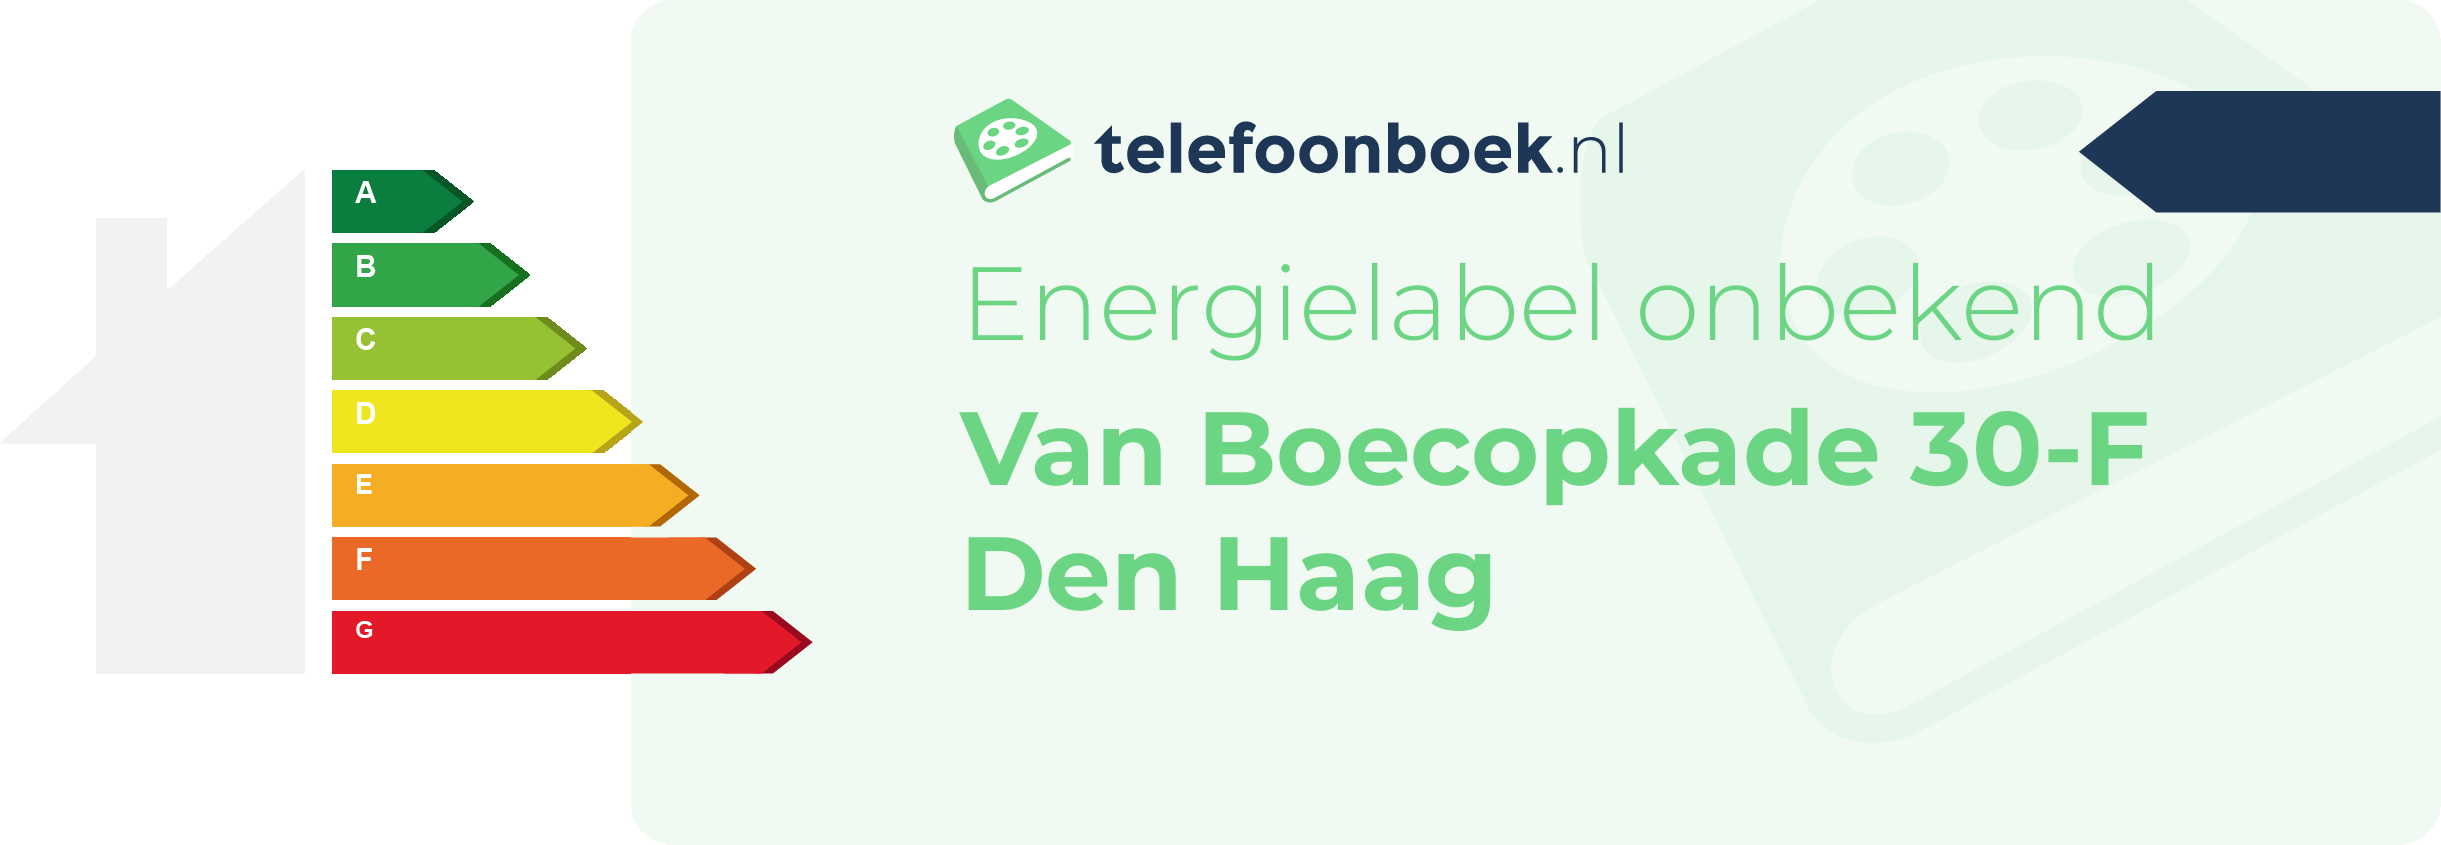 Energielabel Van Boecopkade 30-F Den Haag